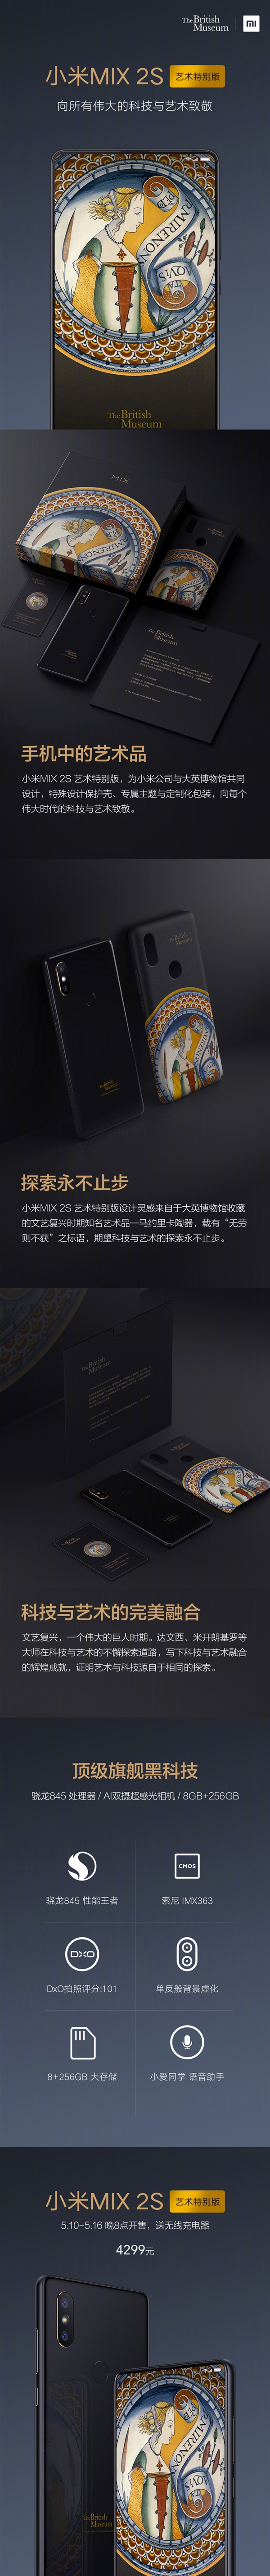 小米MIX 2S造型艺术纪念版将要发售：4299元